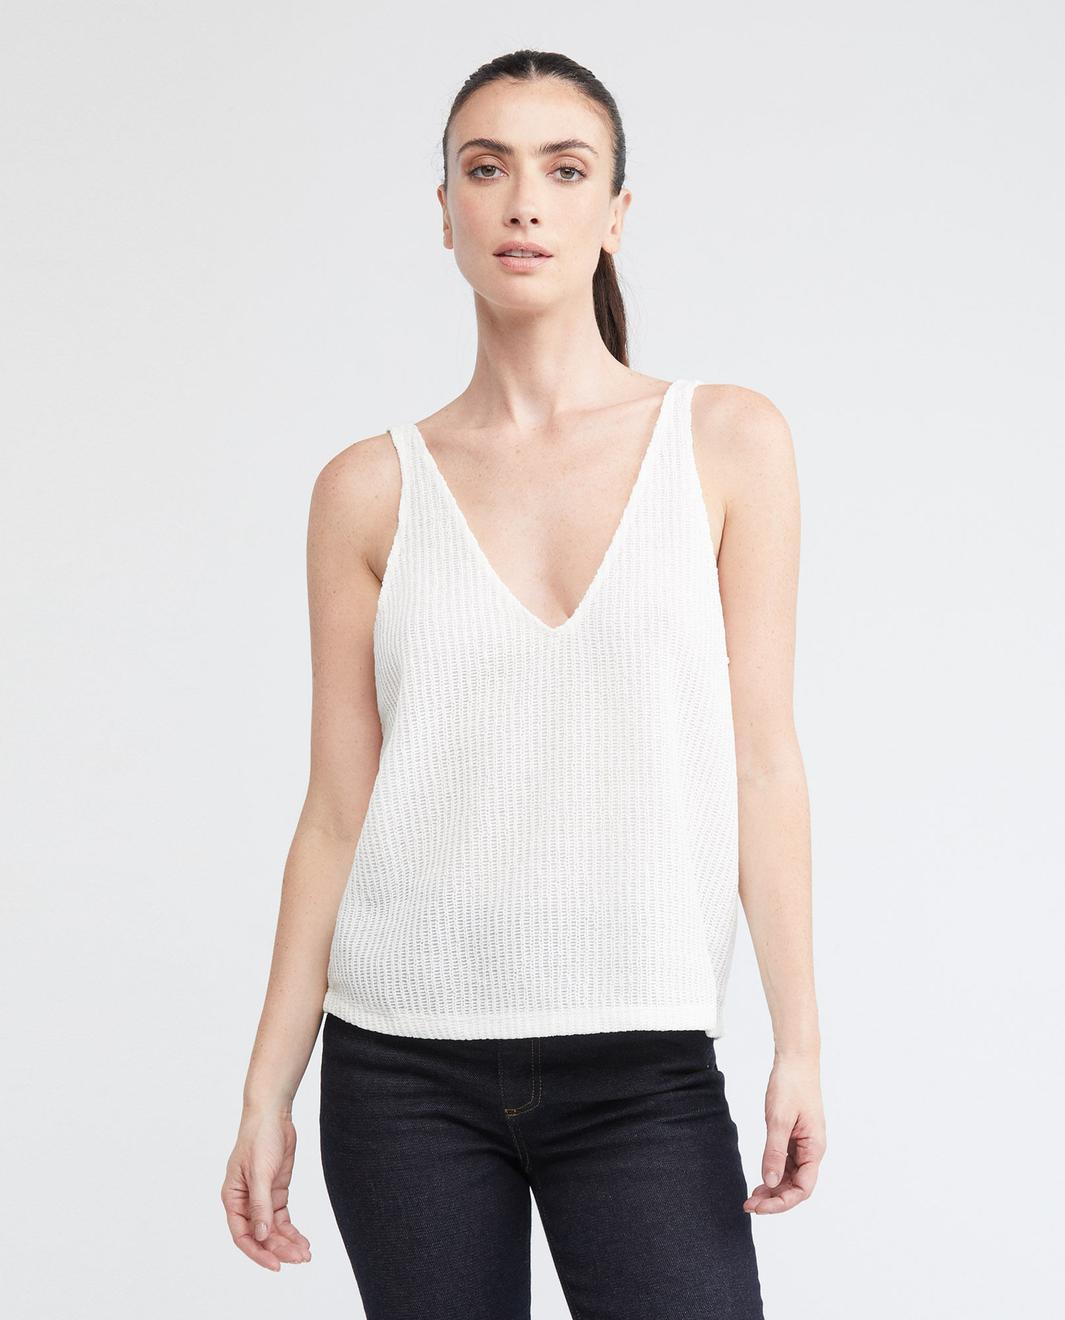 Oferta de Camiseta de Mujer, Tirantes Delgados Escote Profundo en V - Textura Tipo Malla por $97930 en Chevignon